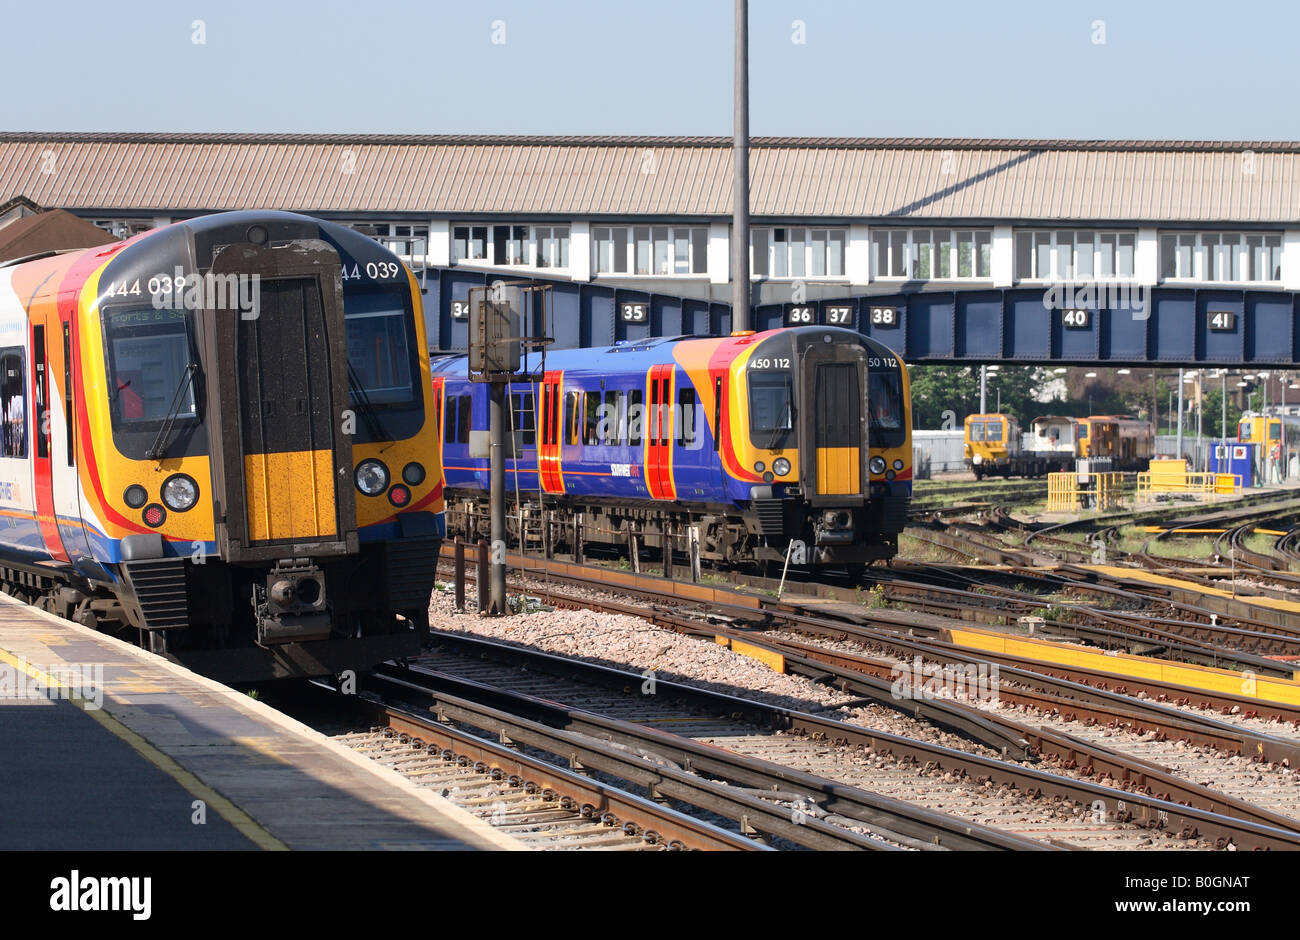 Bahnhof Clapham Junction London South West Trains Schiene Service Zug Klasse 444 und Klasse 450 rollendes Material Stockfoto